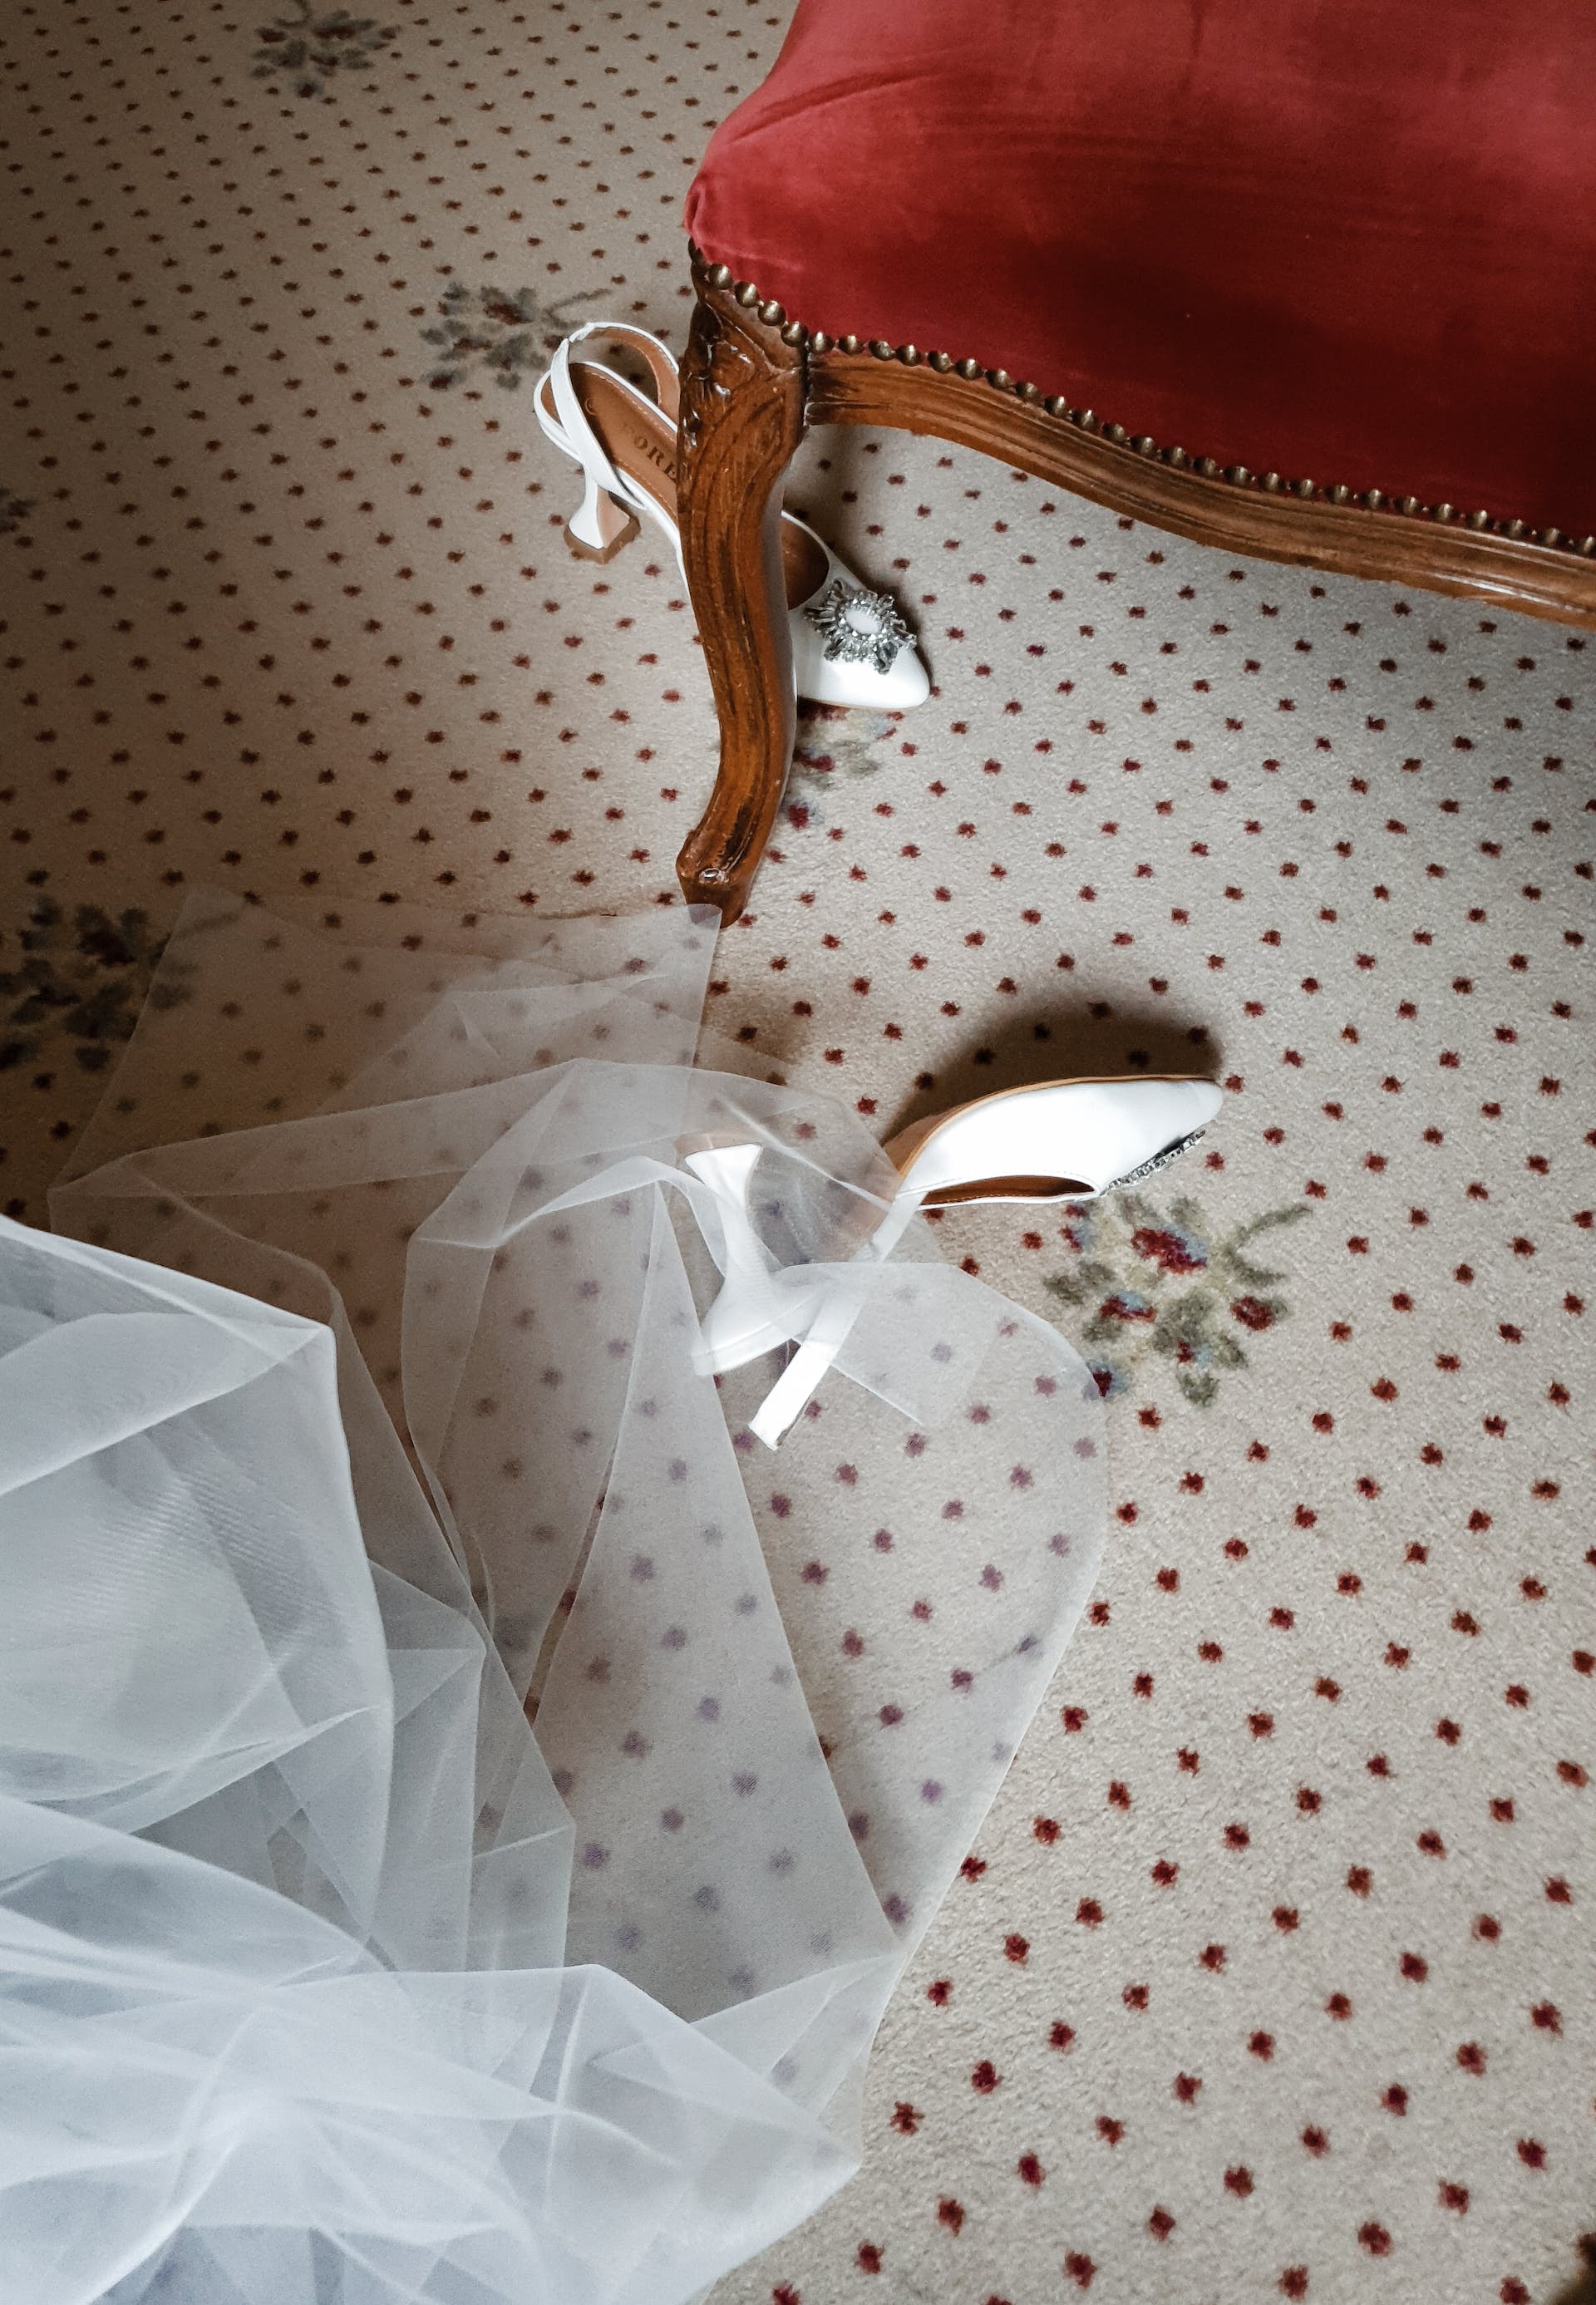 Das Hochzeitskleid und die Schuhe einer Braut auf dem Boden | Quelle: Pexels